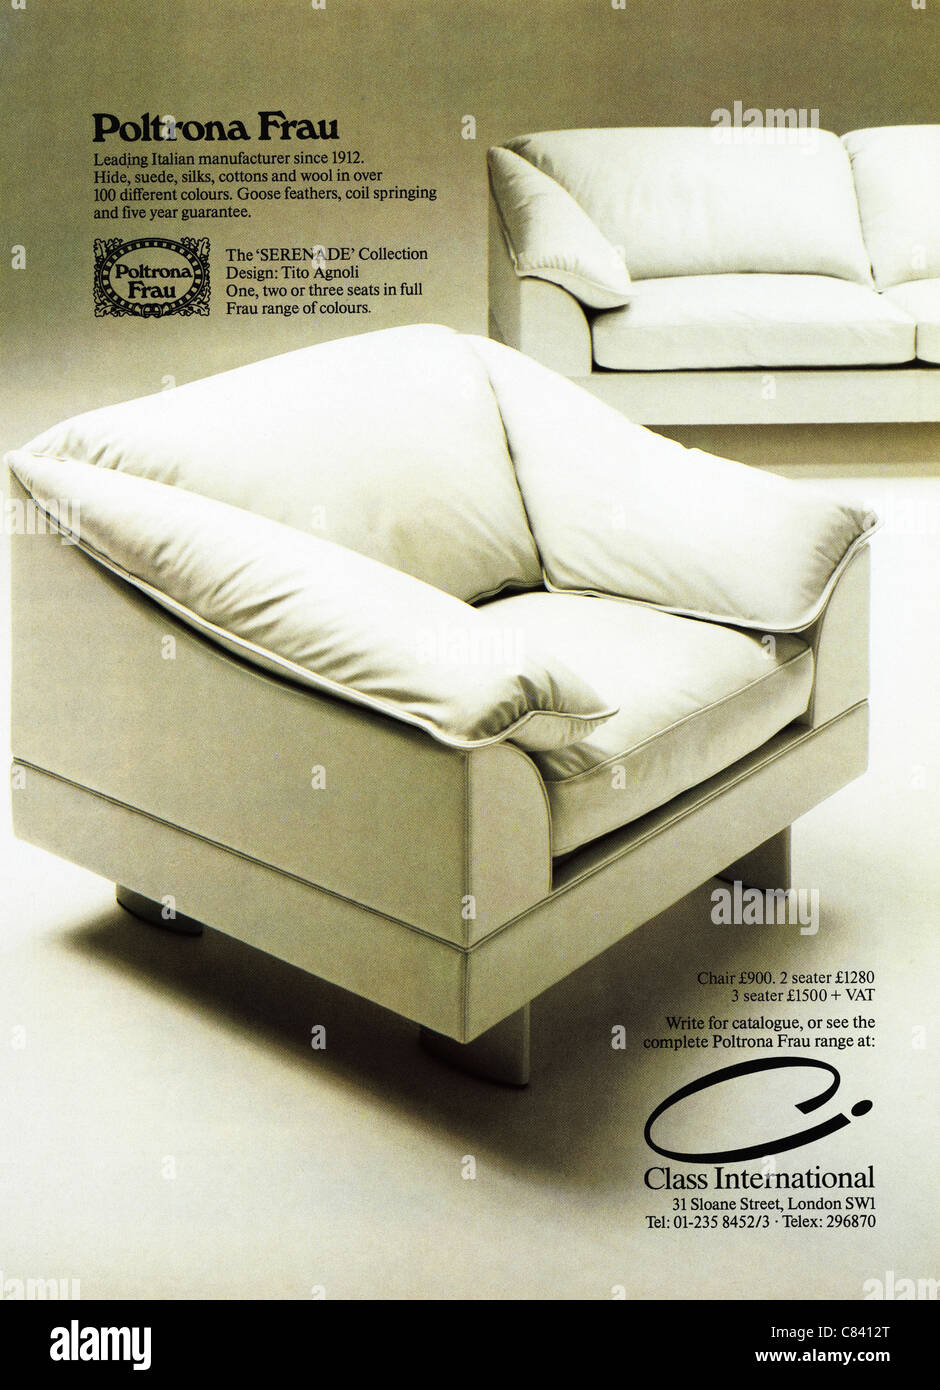 Pagina piena annuncio rivista circa 1984 pubblicità Poltrona Frau design italiano contemporaneo mobili Foto Stock